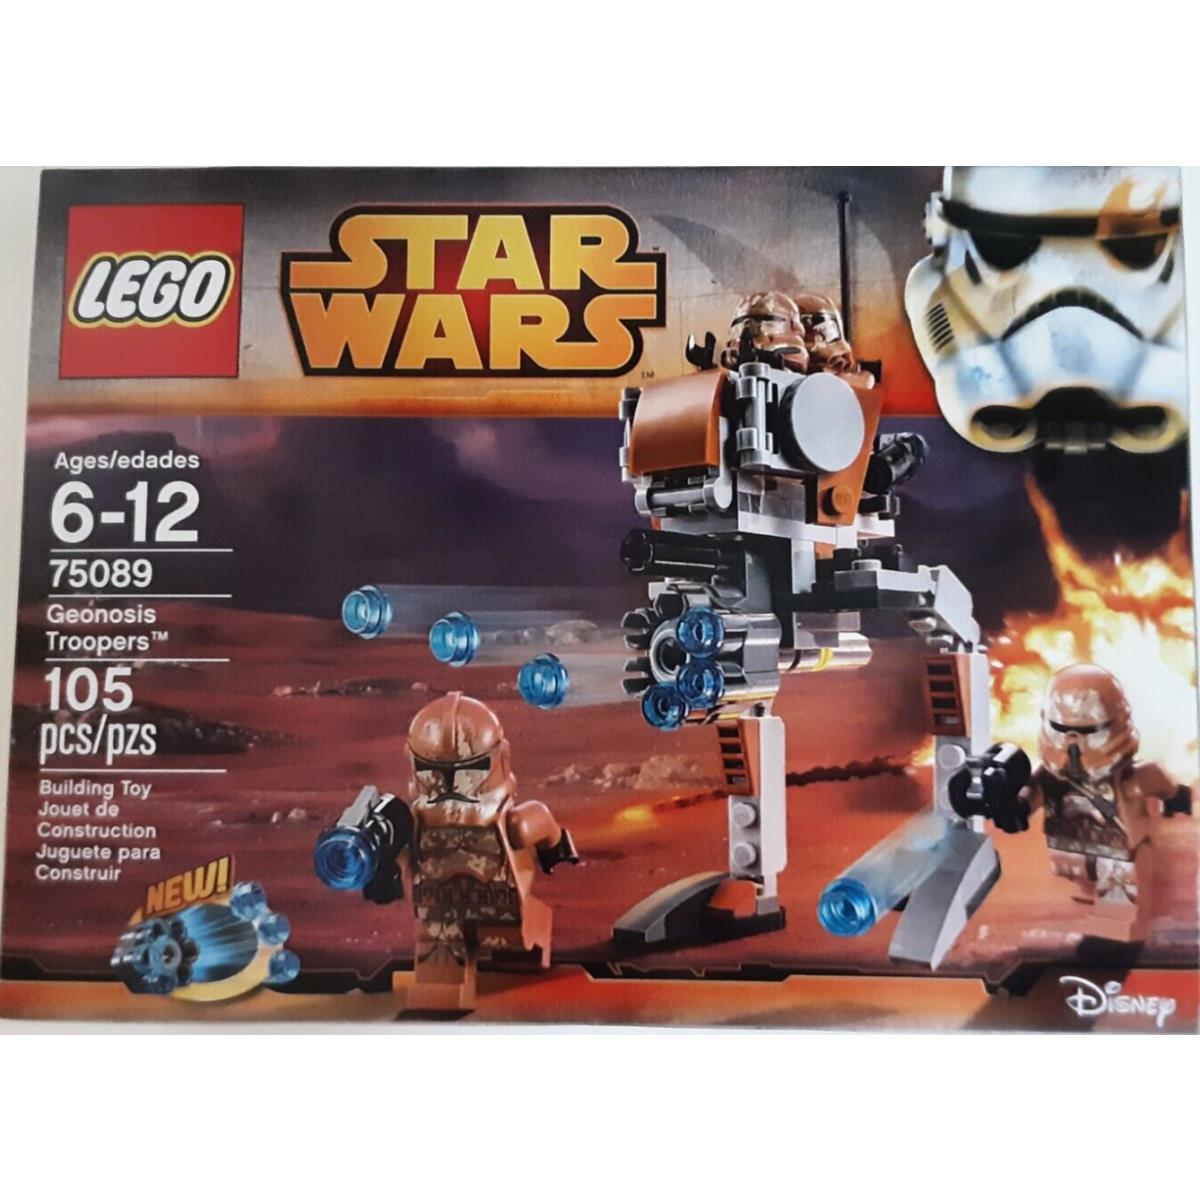 Lego Star Wars 75089 Geonosis Troopers Set - Airborne Trooper Walker